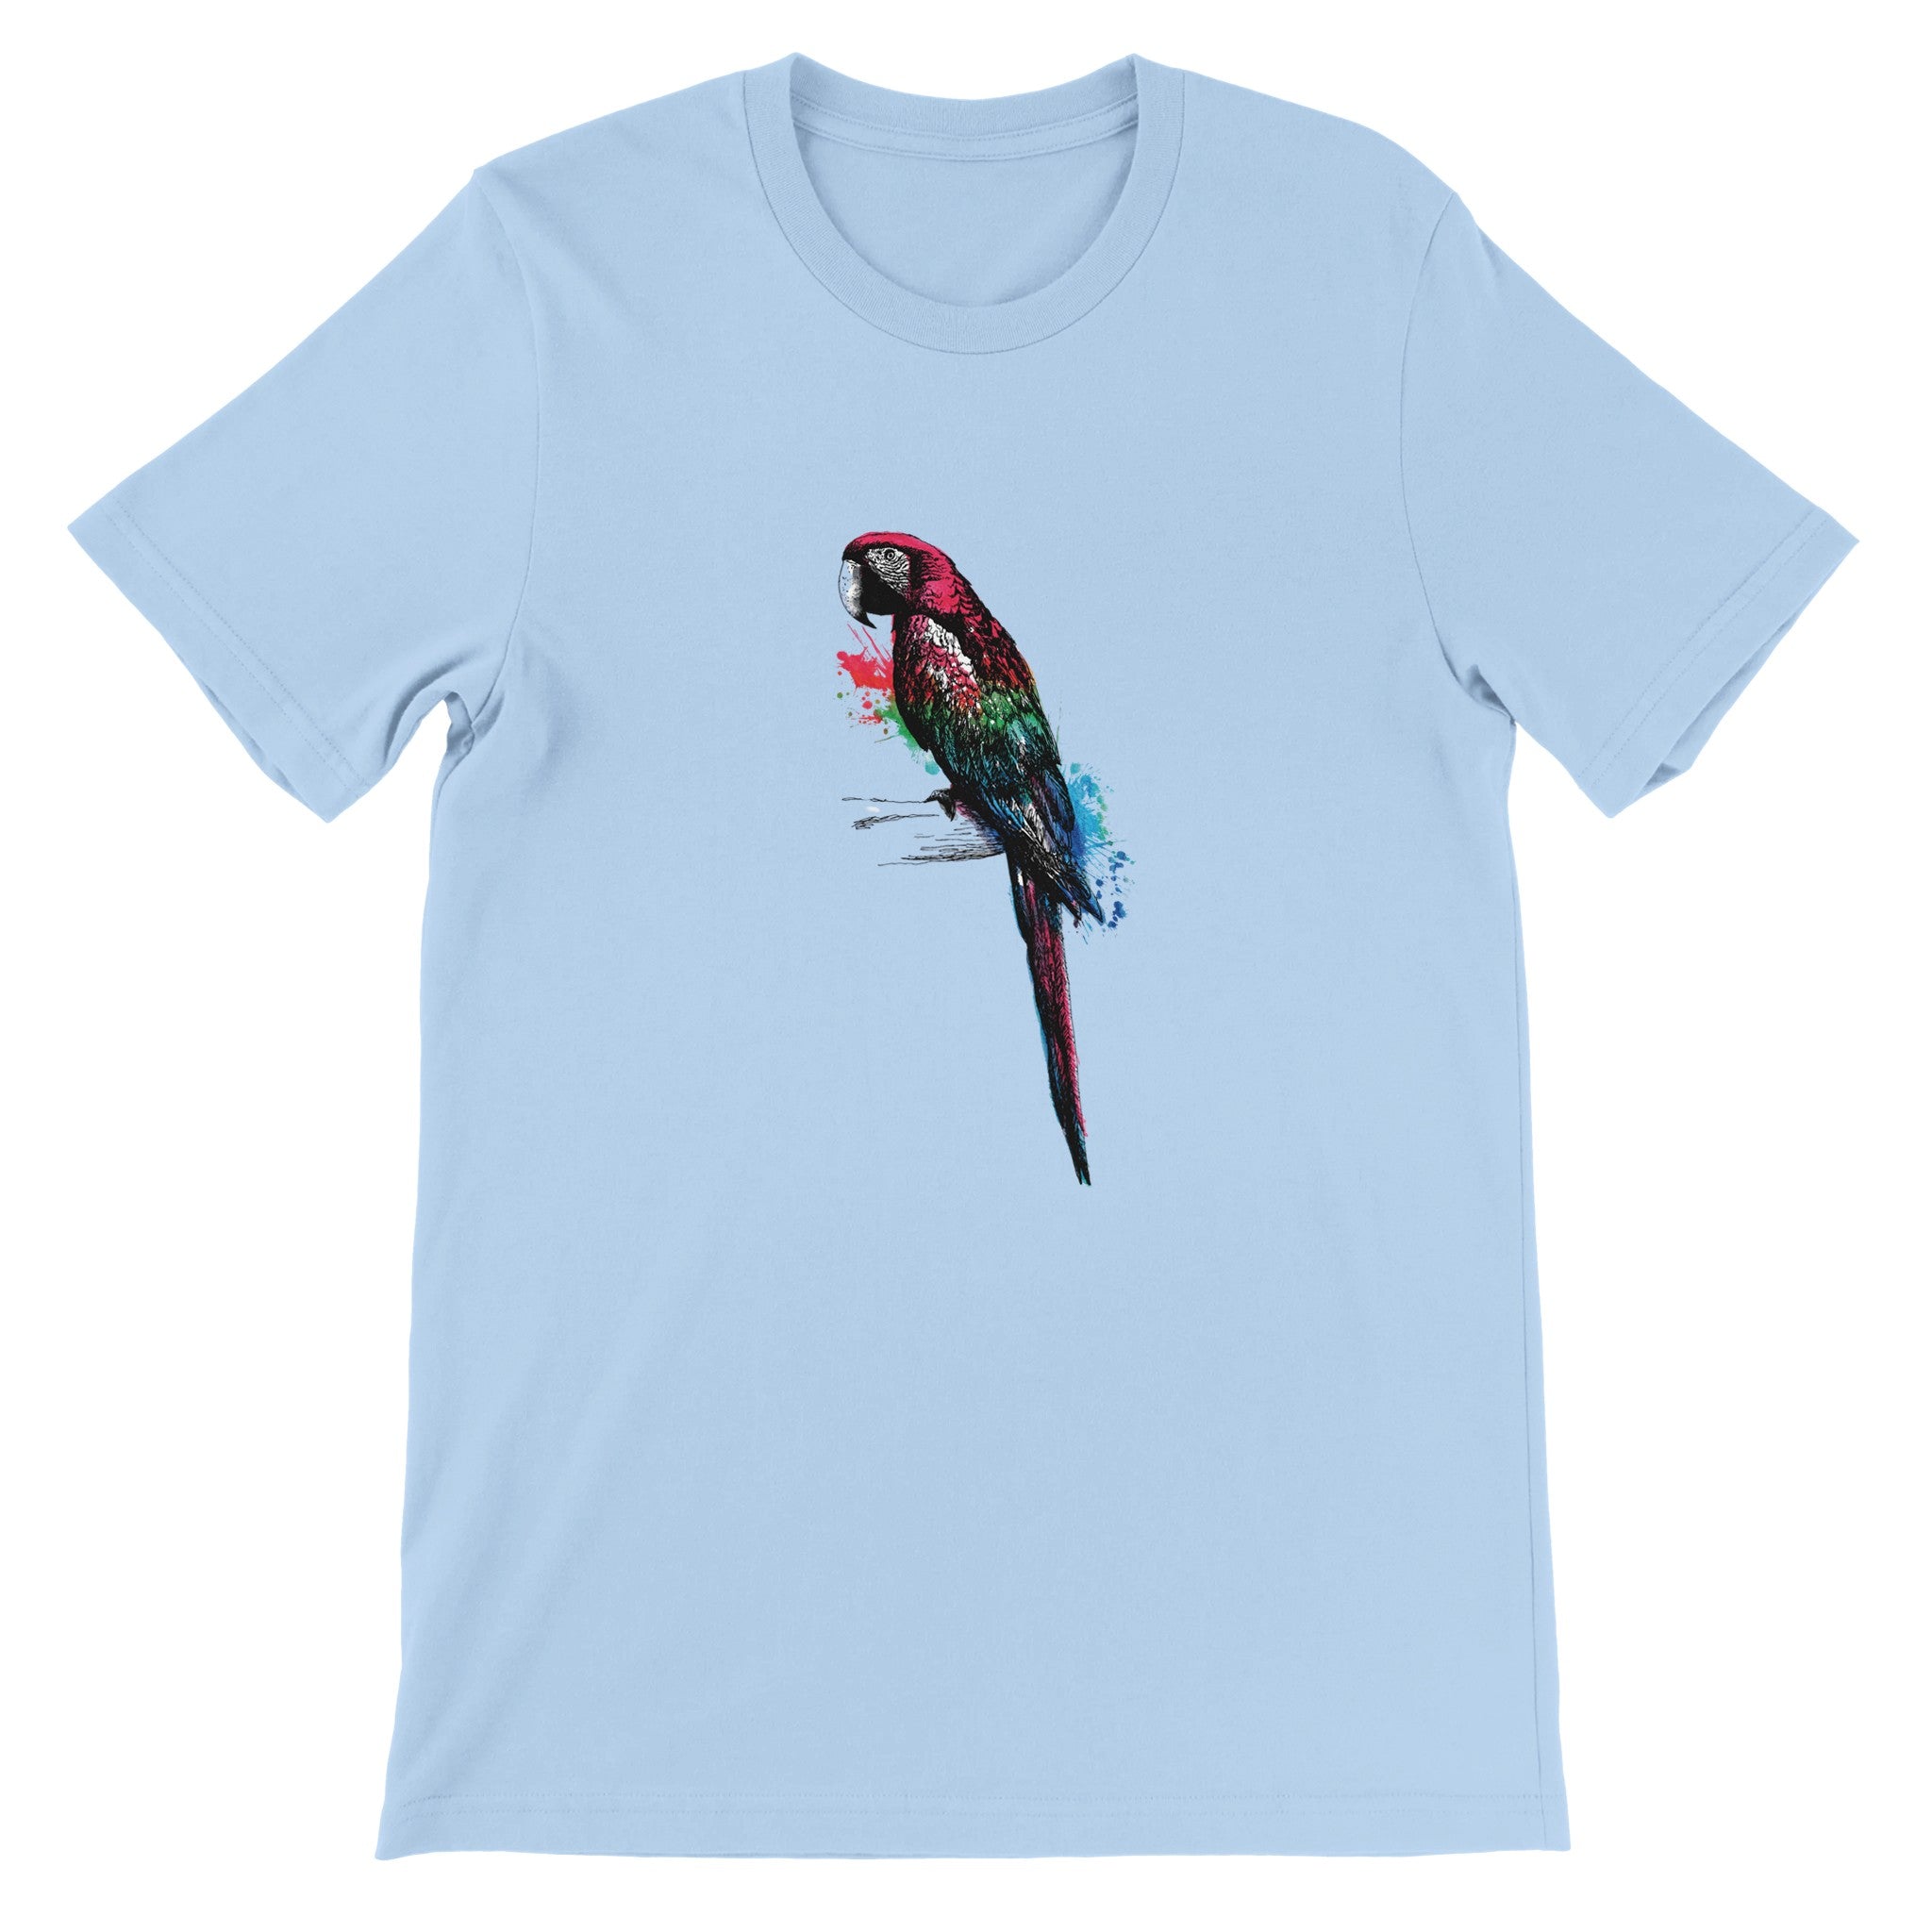 Parrot Illustration Crewneck T-shirt - Optimalprint